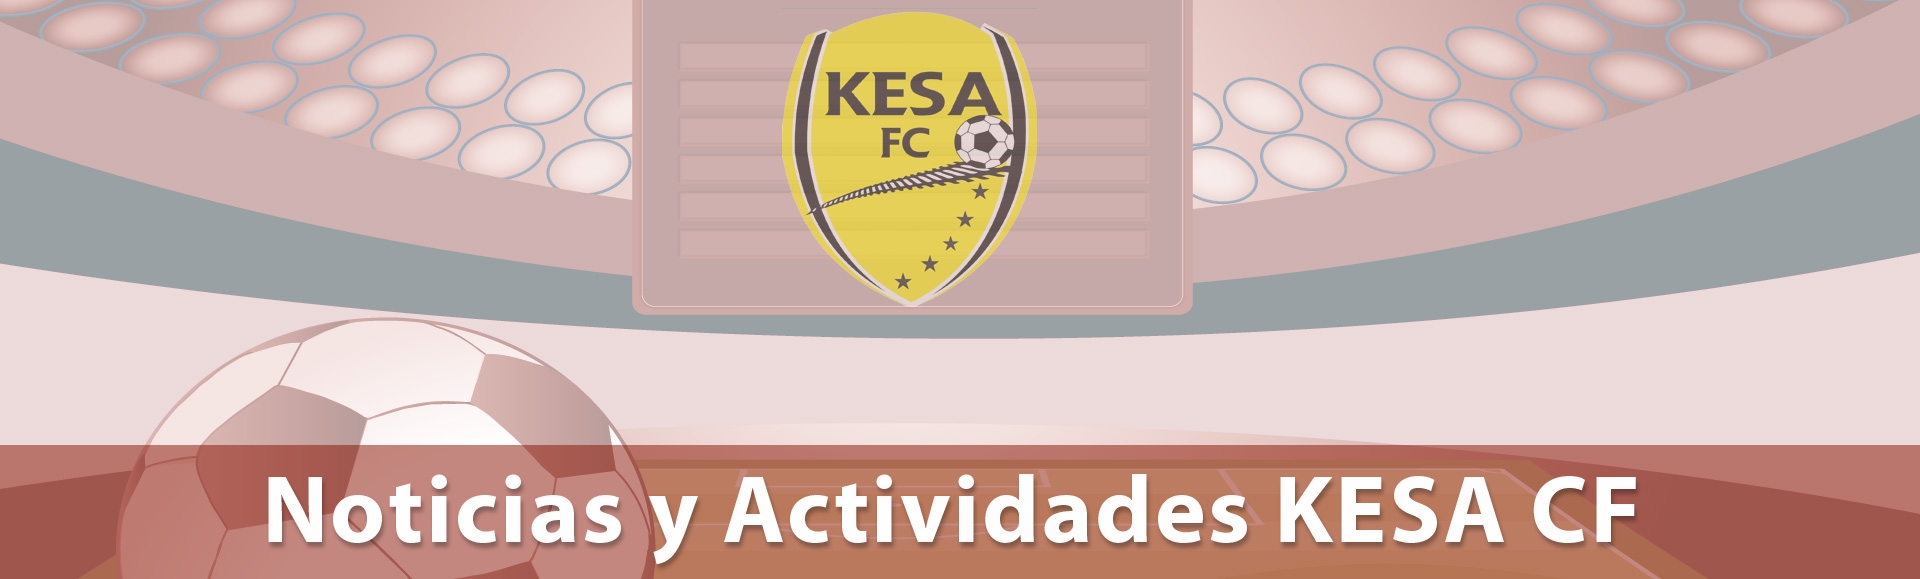 Noticias y Actividades KESA CF